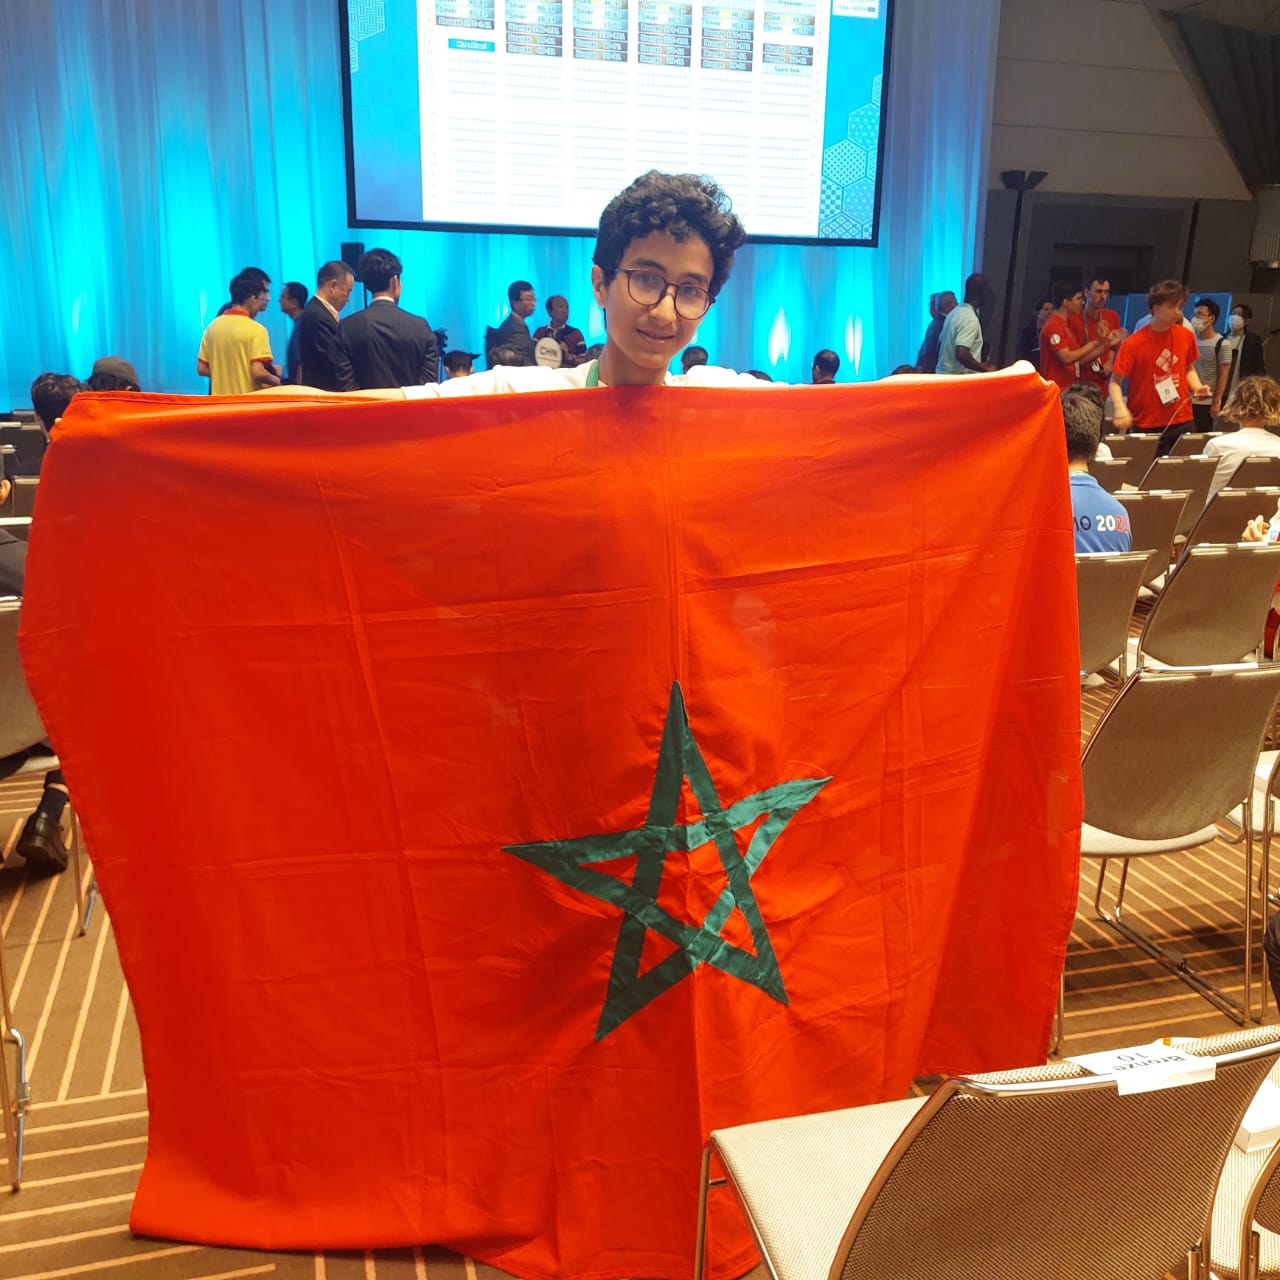 المغرب يفوز بالميدالية البرونزية في الأولمبياد الدولية للرياضيات 